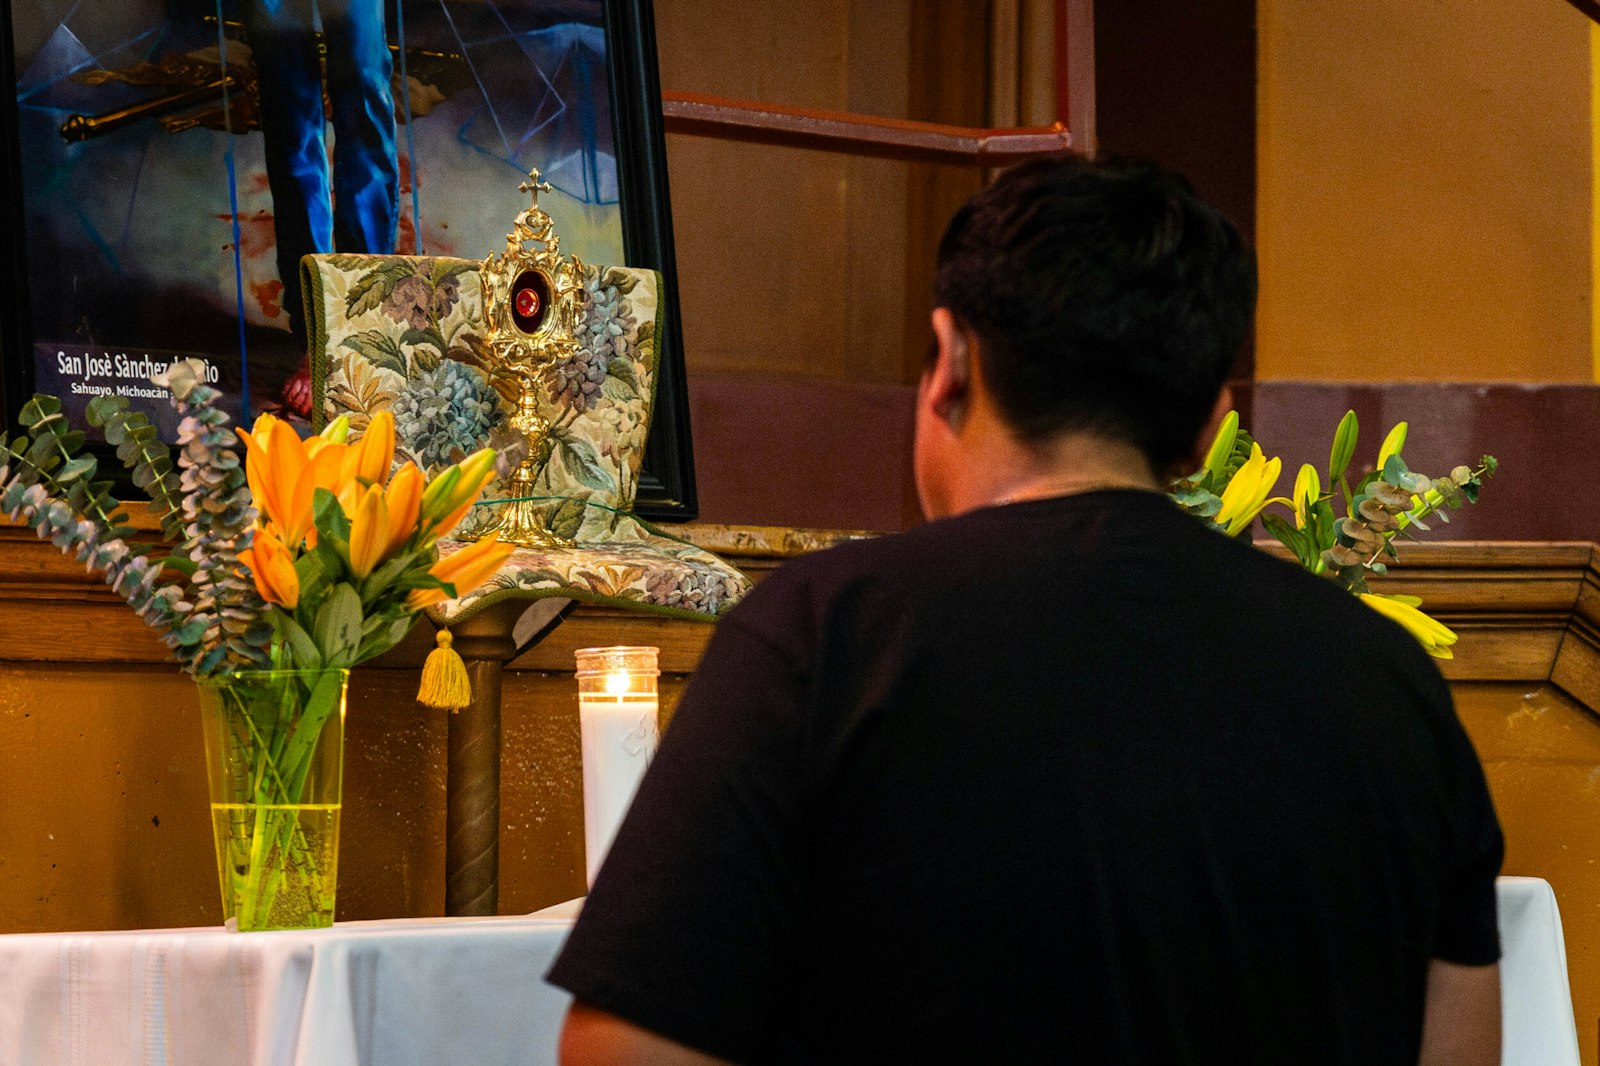 Durante la jornada estuvo presente una reliquia de primer grado de San José Sánchez del Río, mártir mexicano canonizado en 2016 y cariñosamente conocido como Joselito, para que los participantes también pudieran venerarla.